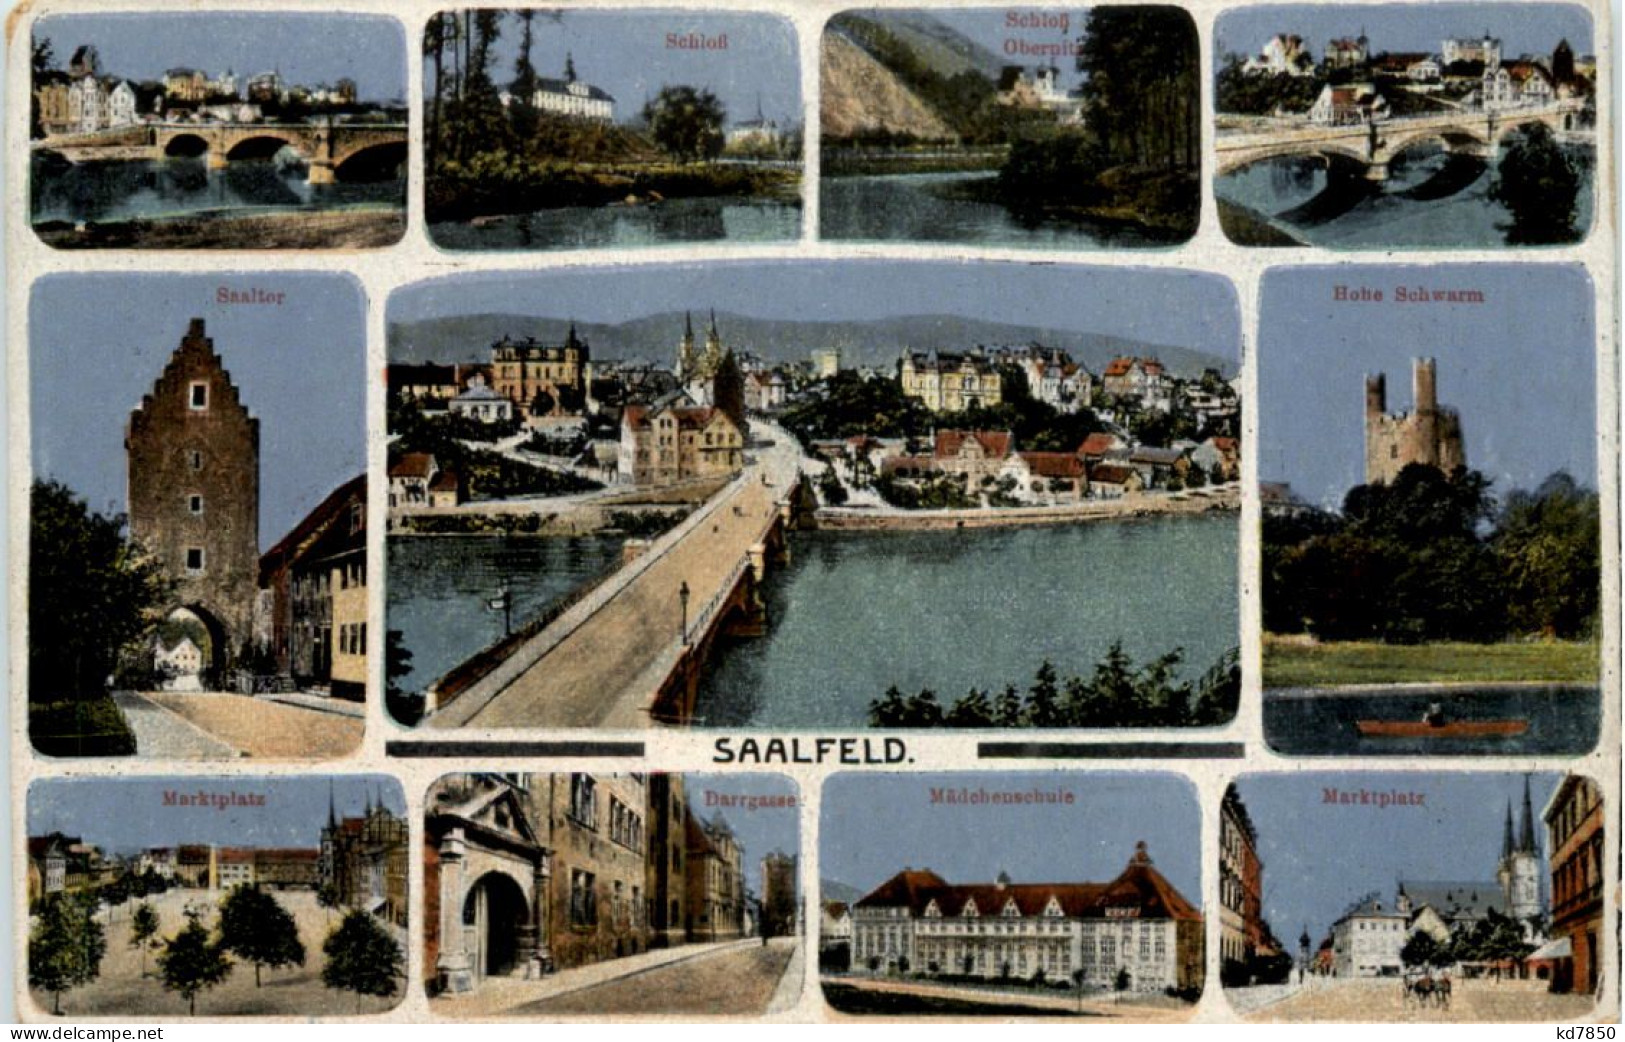 Saalfeld - Saalfeld